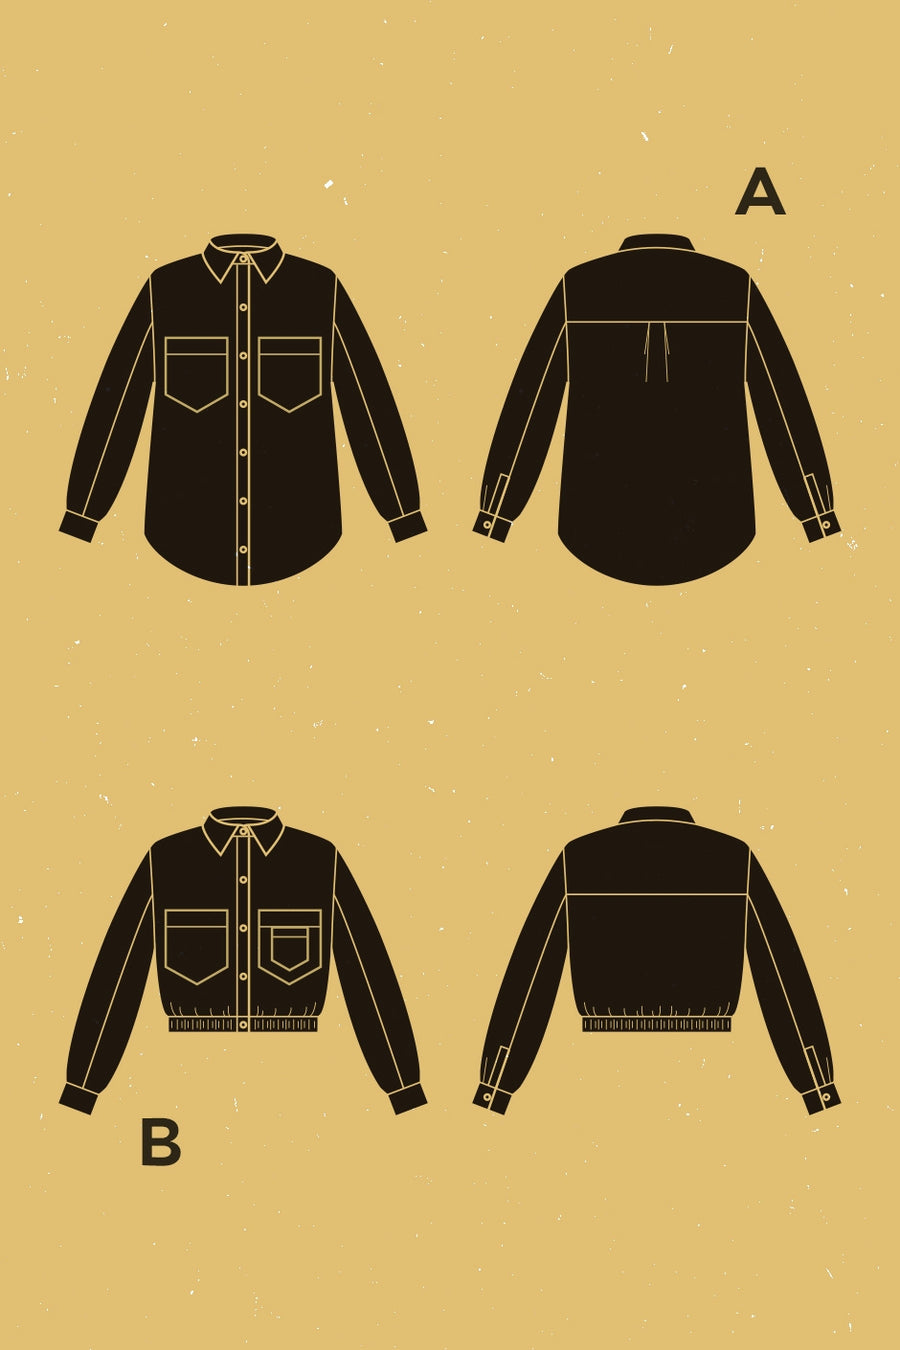 Fougère Overshirt + Jacket Pattern | Patron de Surchemise + Veste Fougère | Deer & Doe